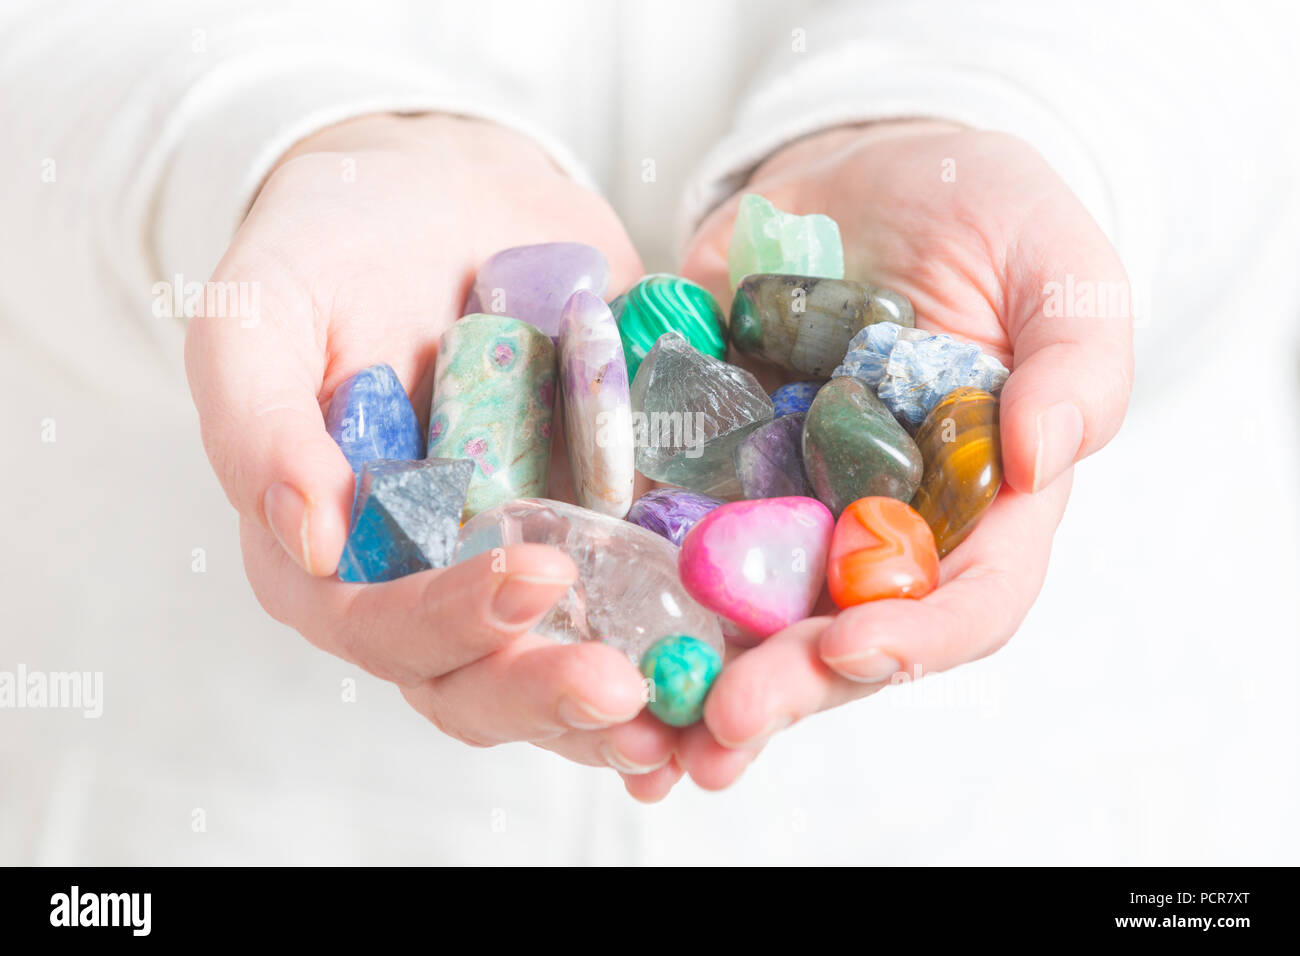 Multiple semi precious gemstones in hands Stock Photo